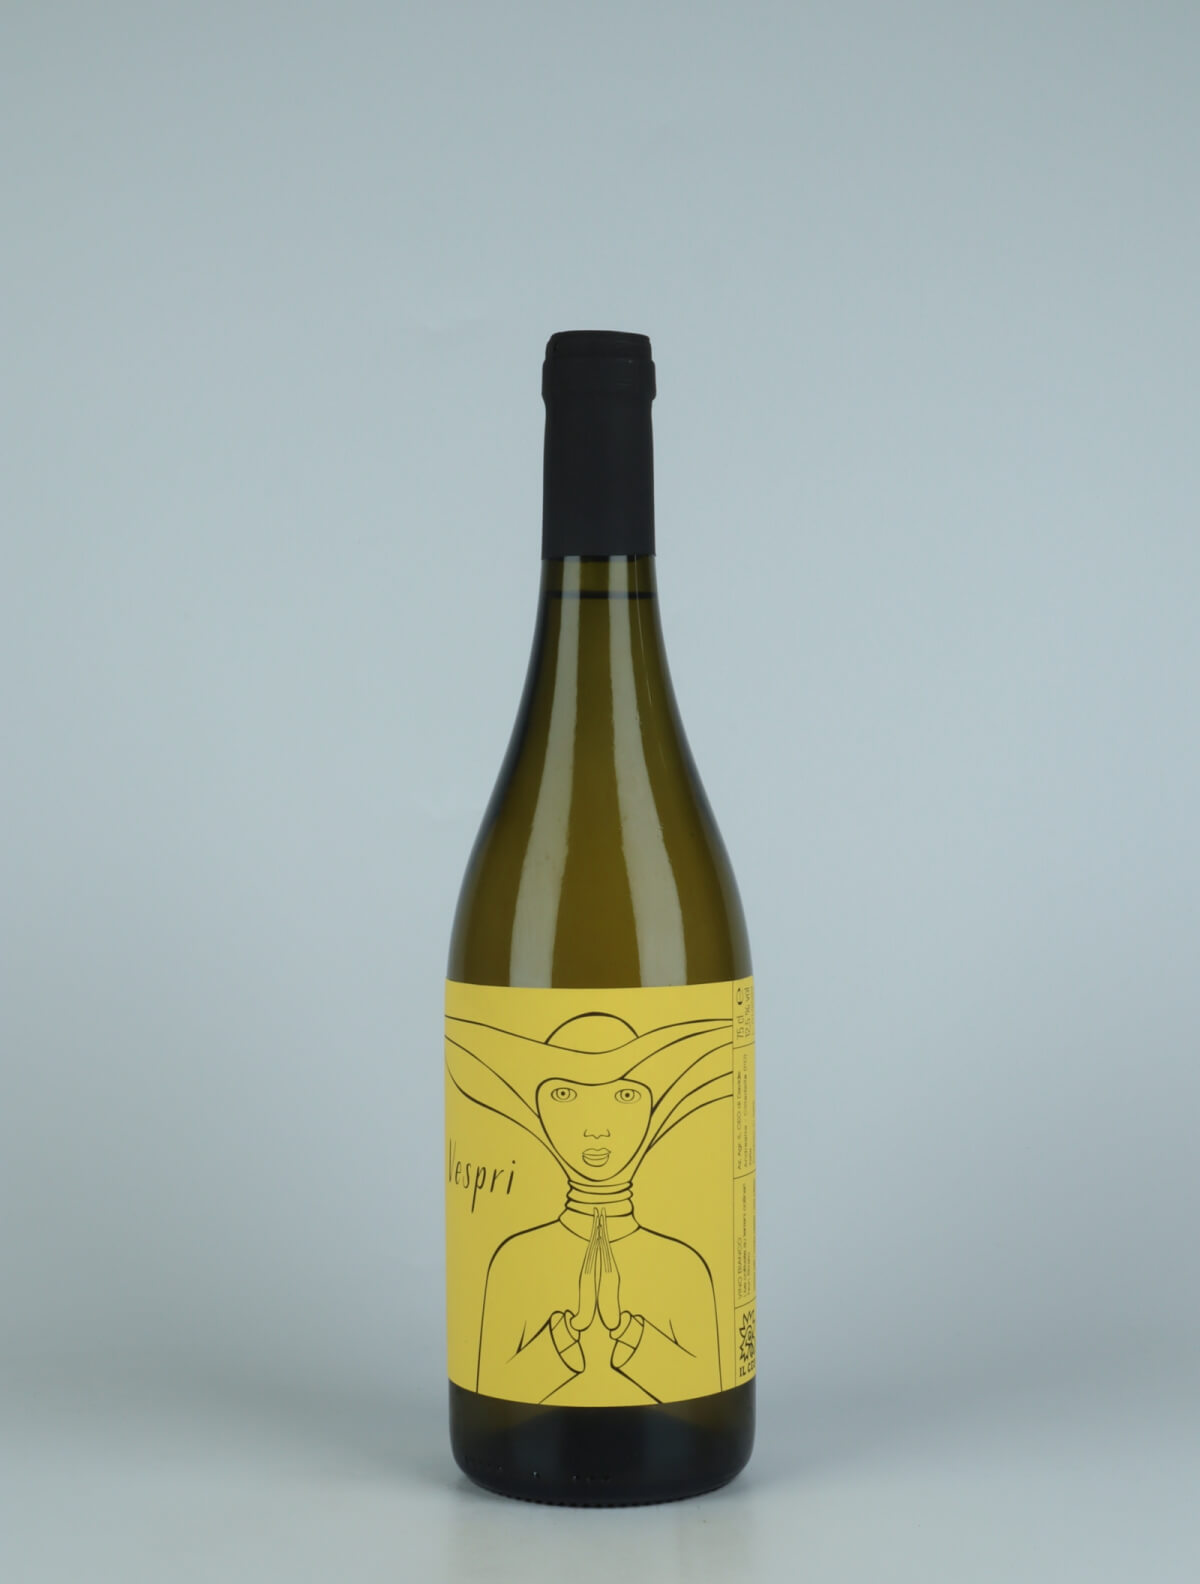 A bottle 2021 Vespri White wine from Il Ceo, Veneto in Italy